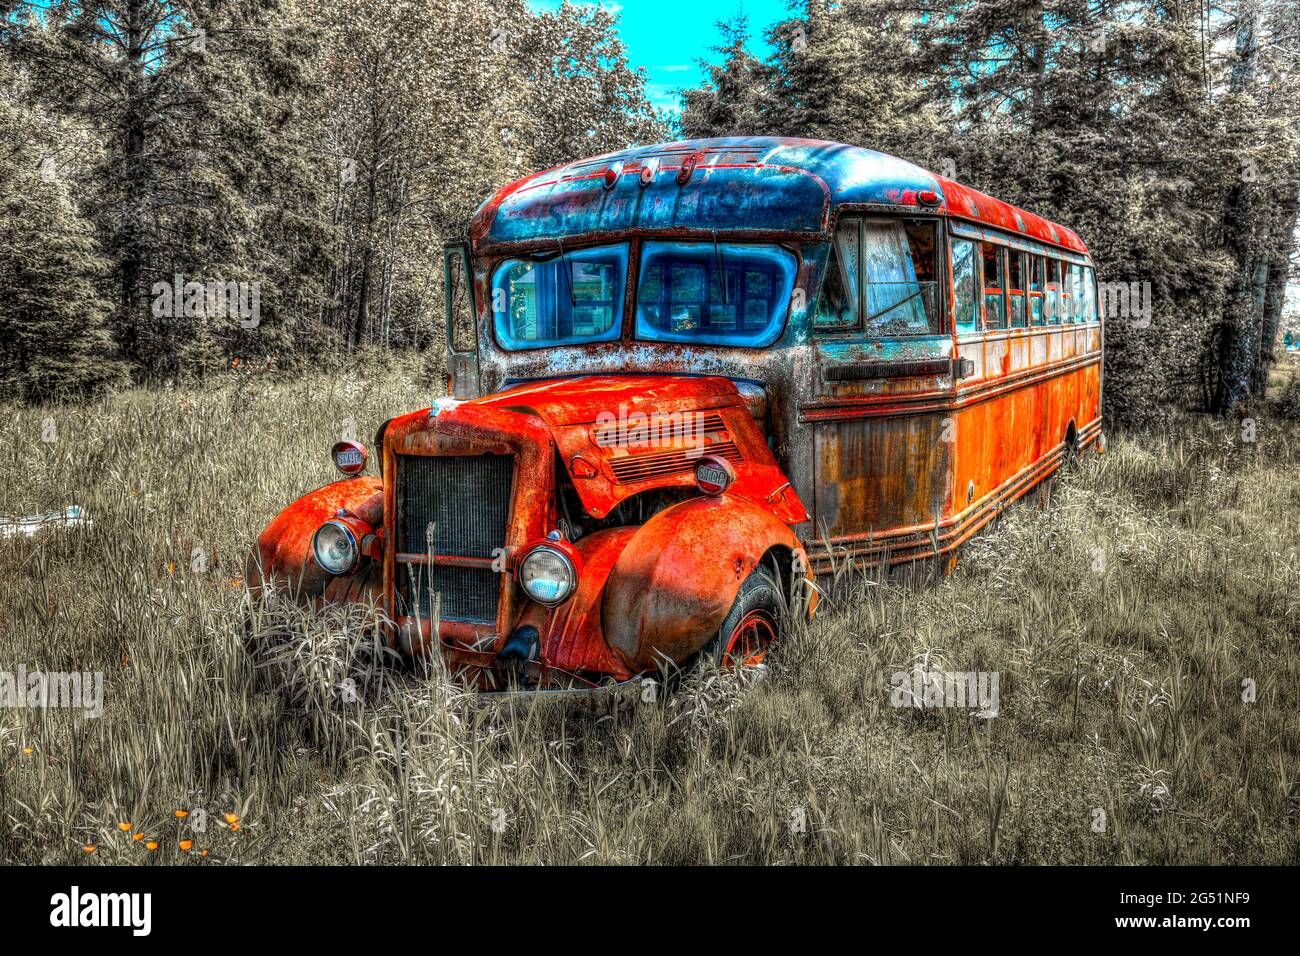 Abandonado viejo autobús oxidado de pie en la hierba Foto de stock